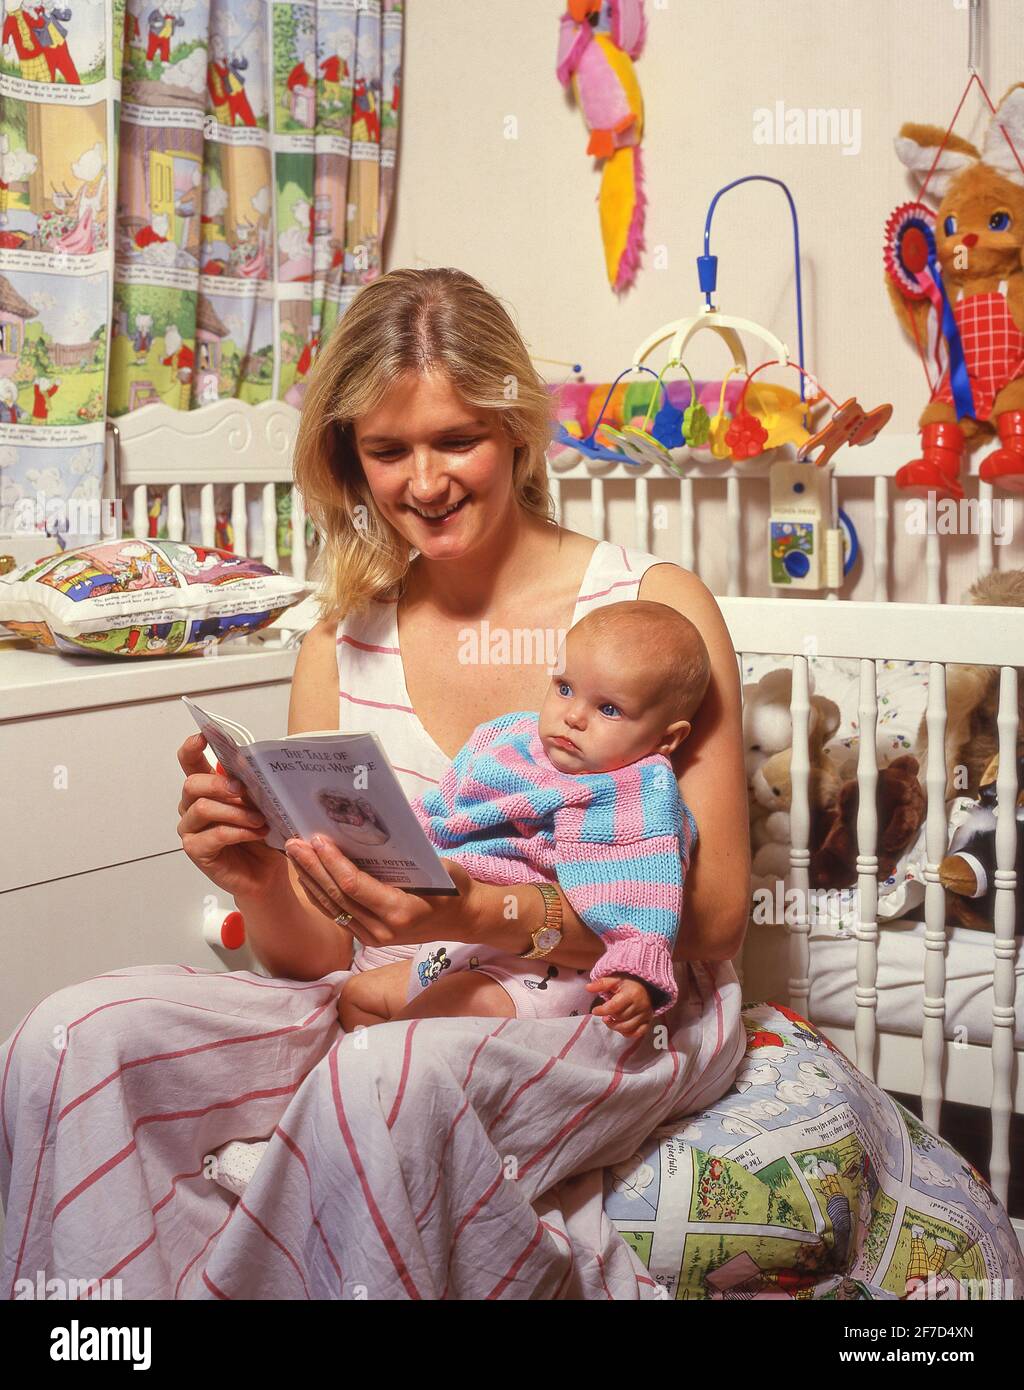 Livre de lecture de mère à la fille de bébé, Winkfield, Berkshire, Angleterre, Royaume-Uni Banque D'Images